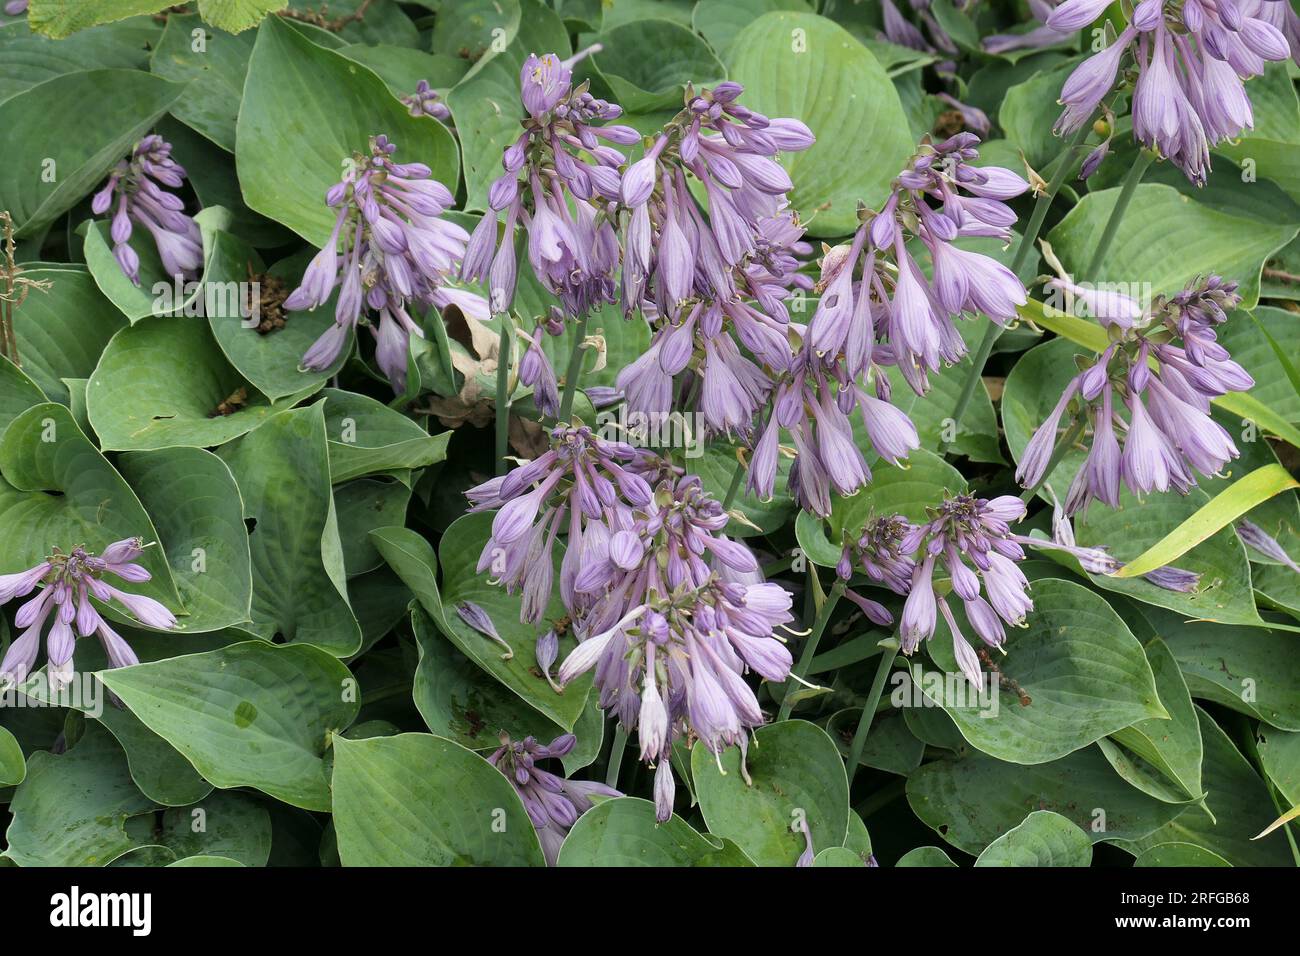 Die lila Blüten und die grünen Blätter der mehrjährigen Gartenpflanze schattieren das Lied von Hosta Wagtail. Stockfoto